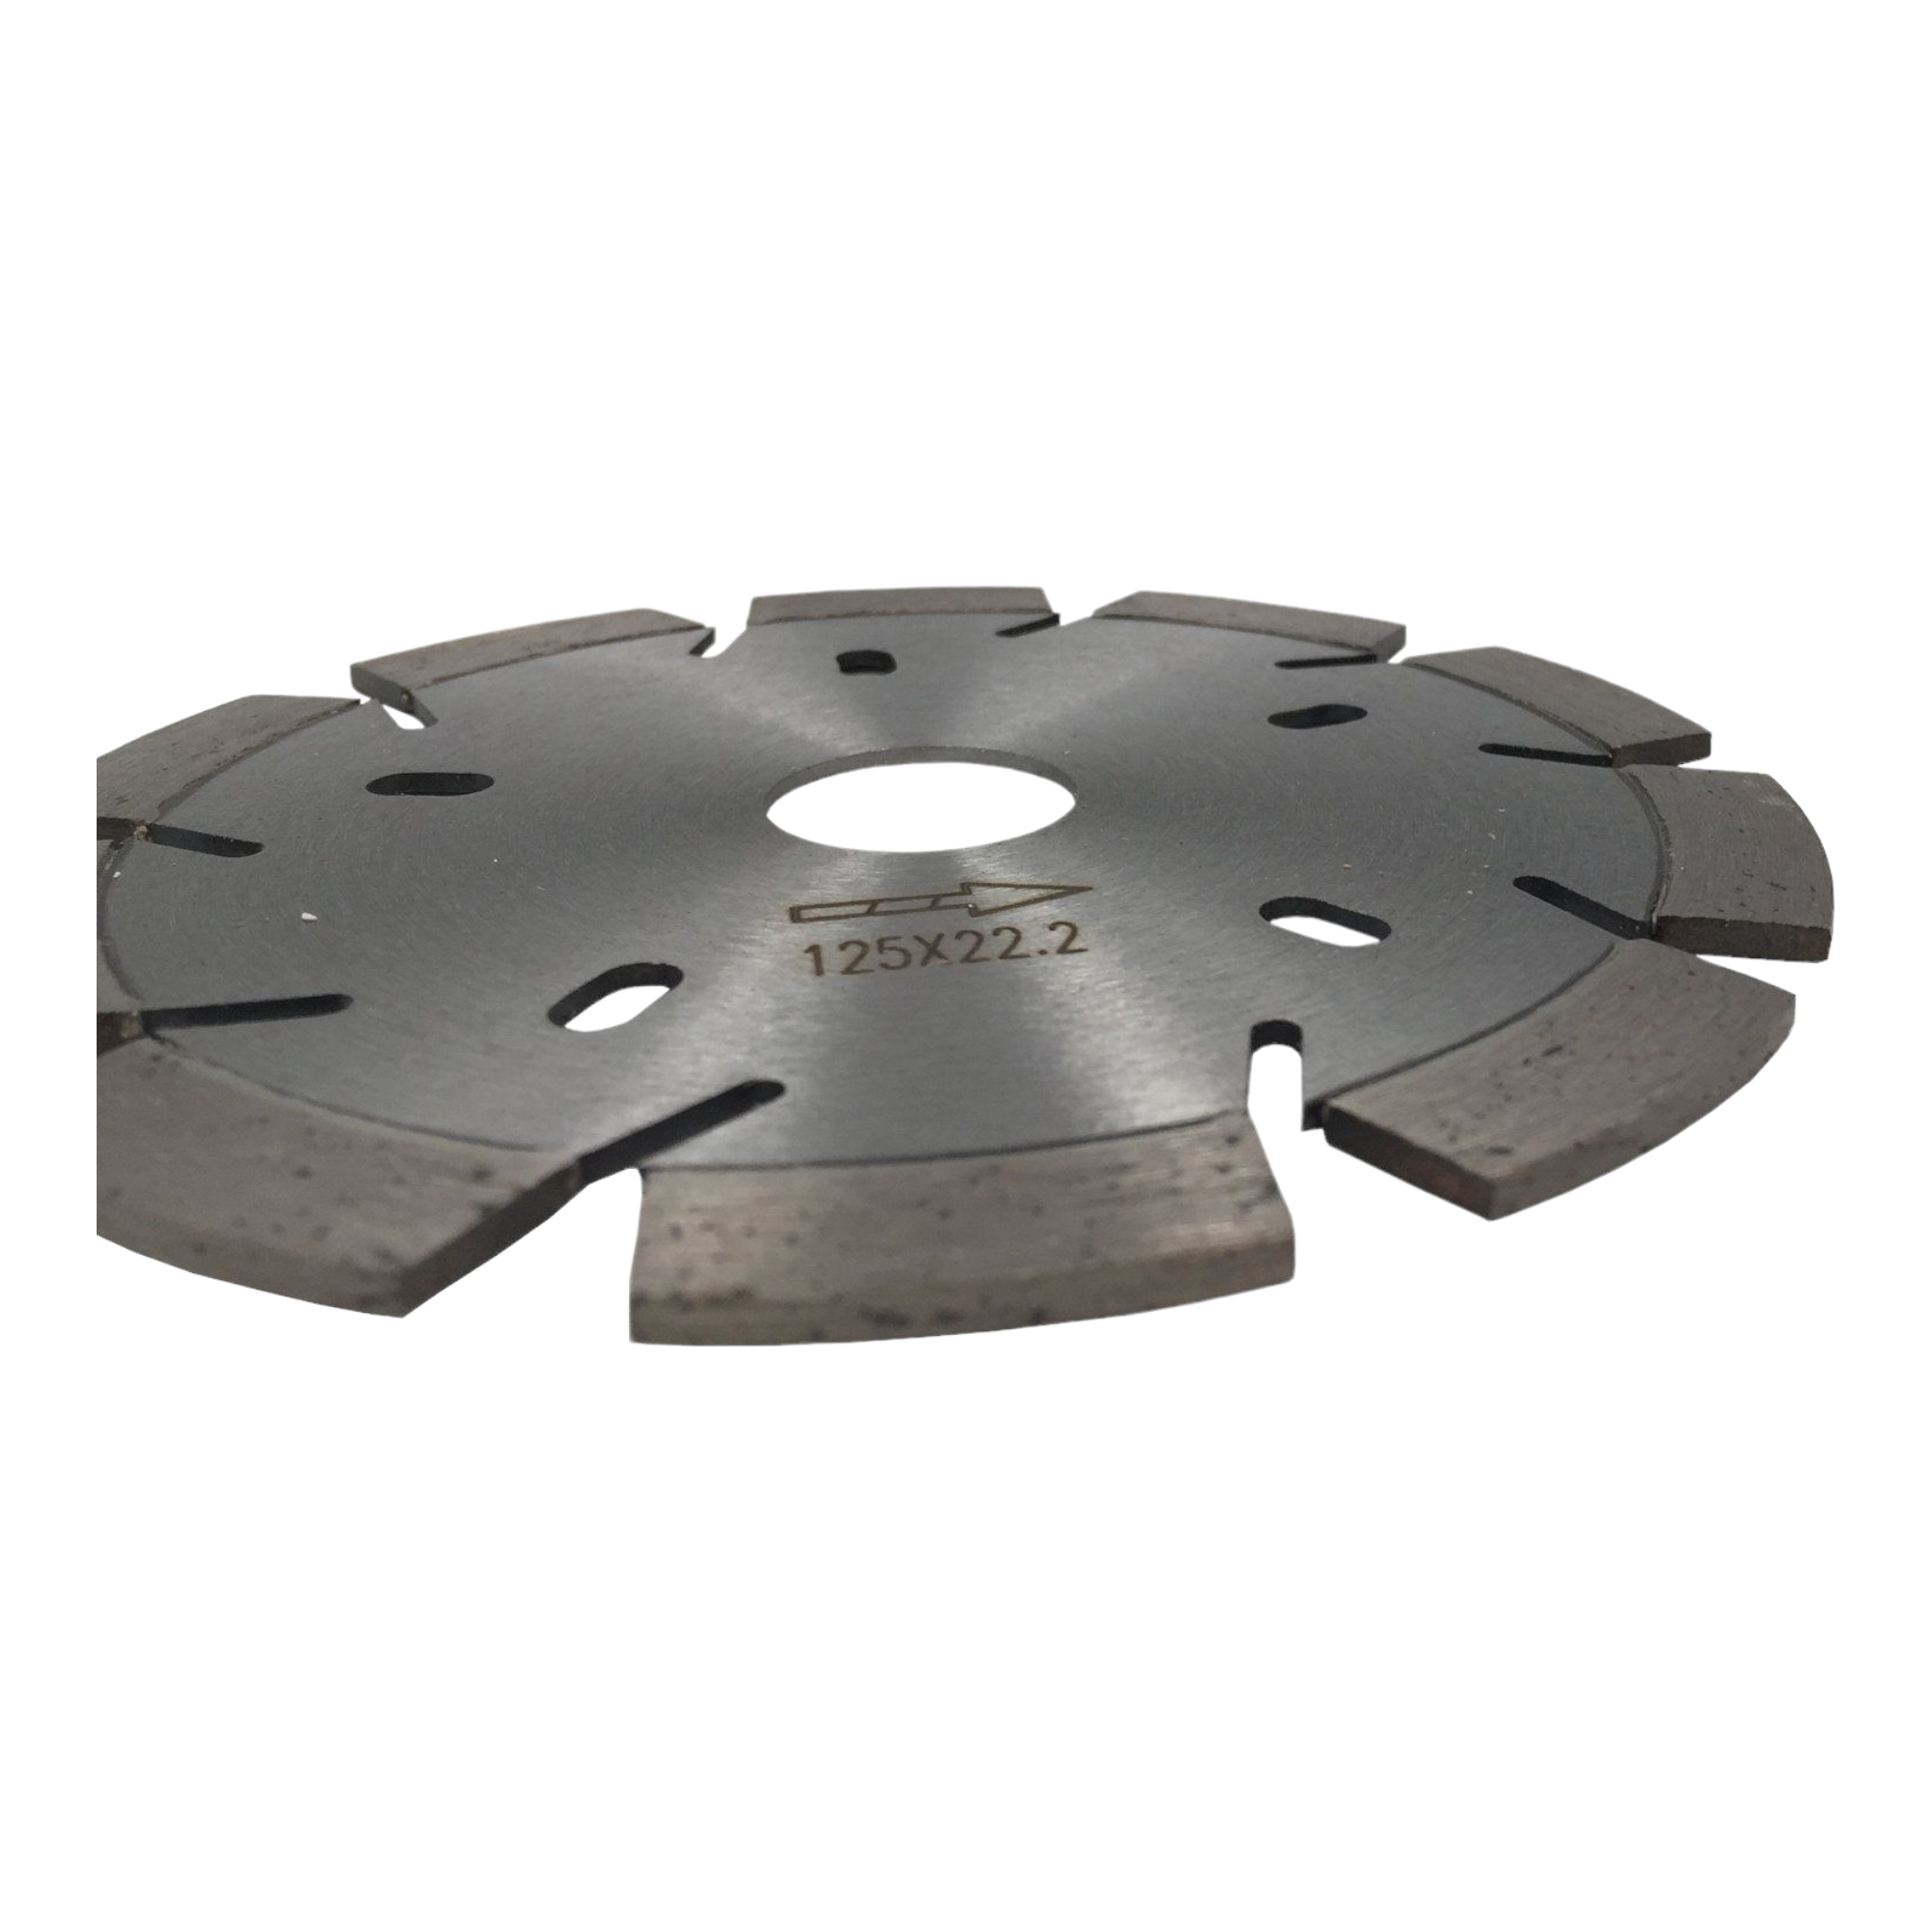 Diamantscheibe Power Cut Pro 125 mm für Beton Granit Klinker Stein